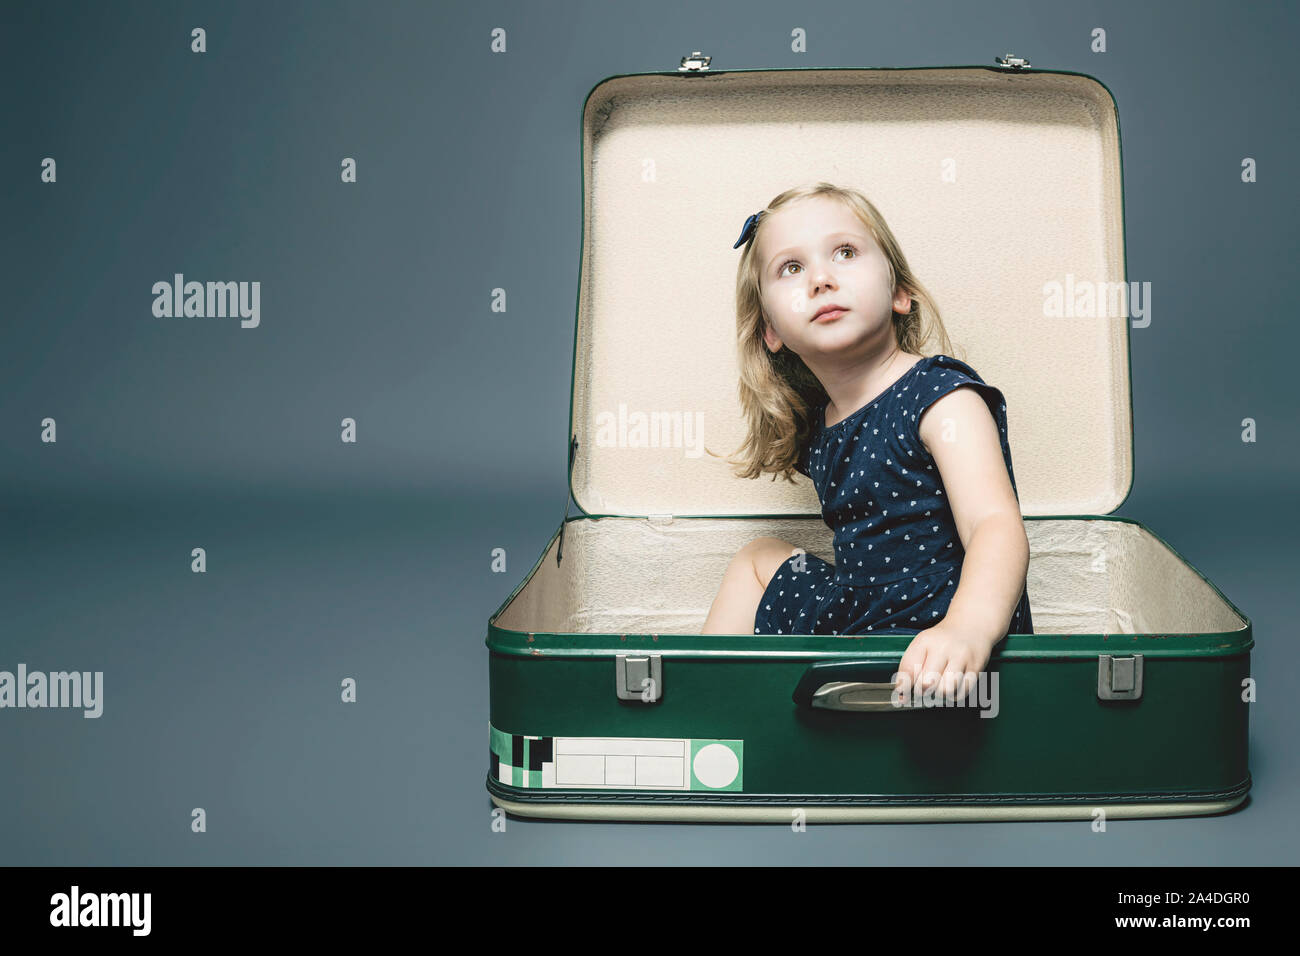 Retrato de una niña de tres años chica rubia caucásica sentado en una maleta vintage. Foto de estudio Foto de stock